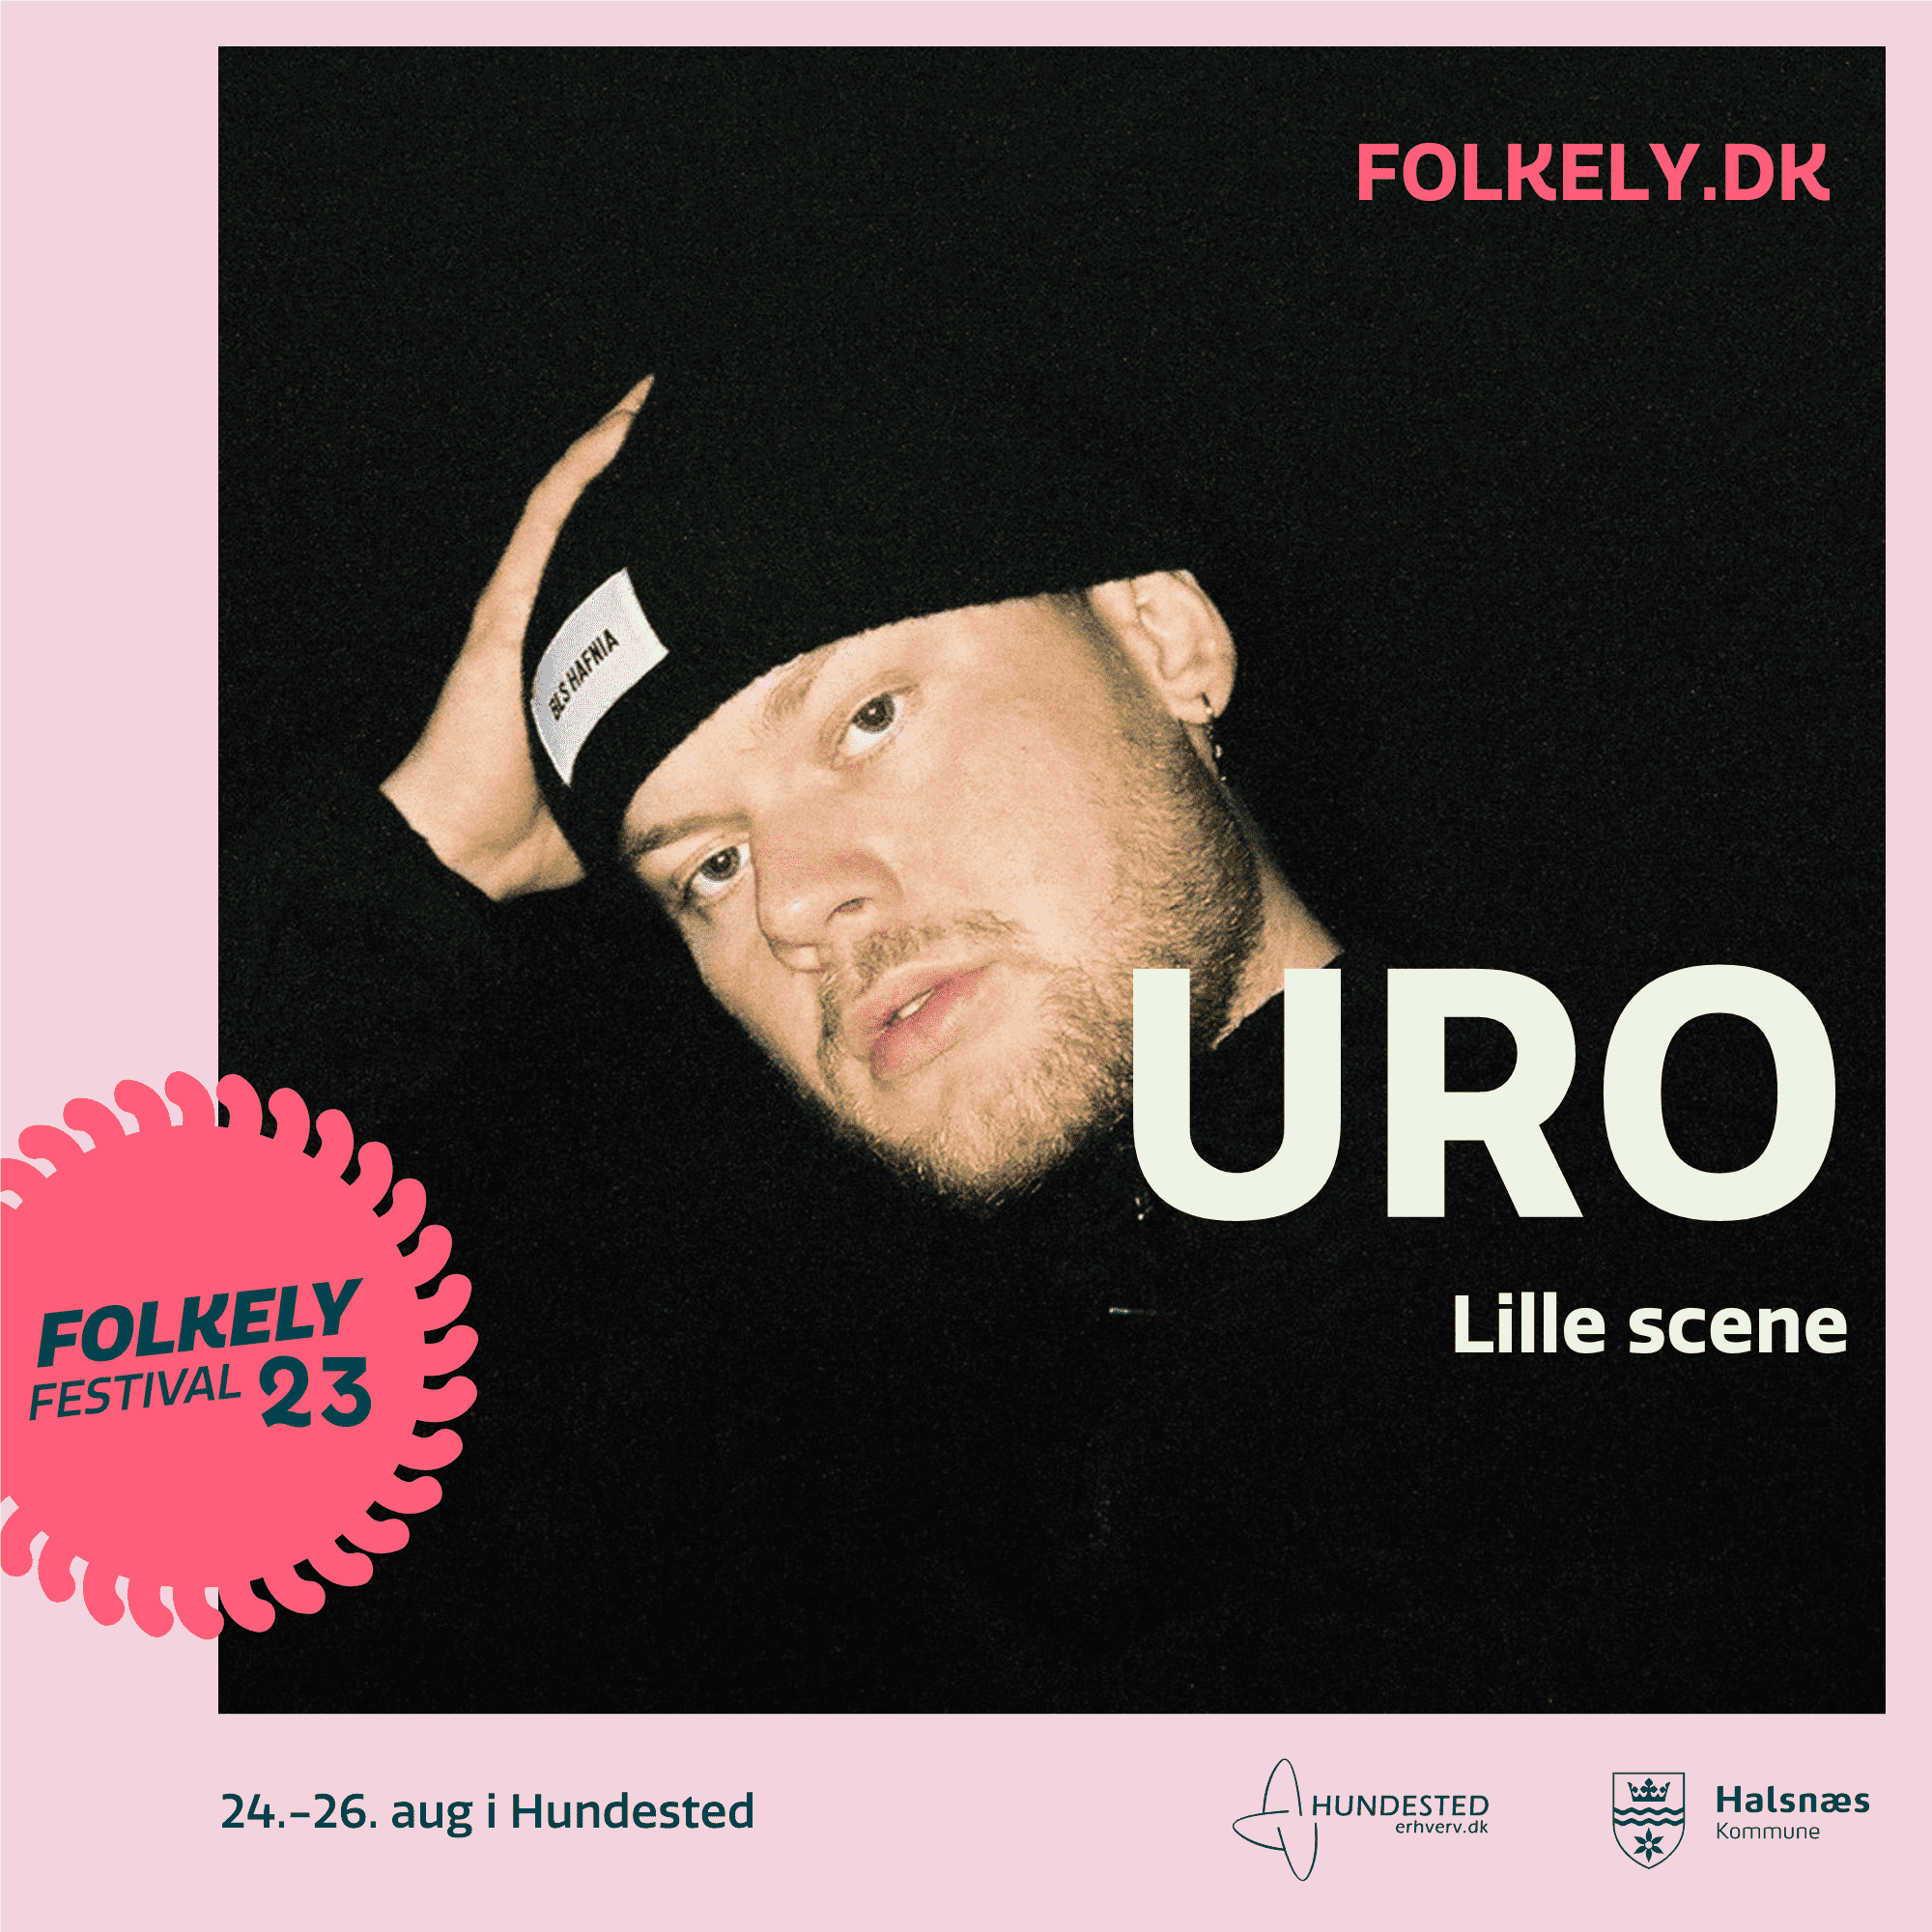 URO, Folkely Festival 2023, Uro Folkely, Hundested